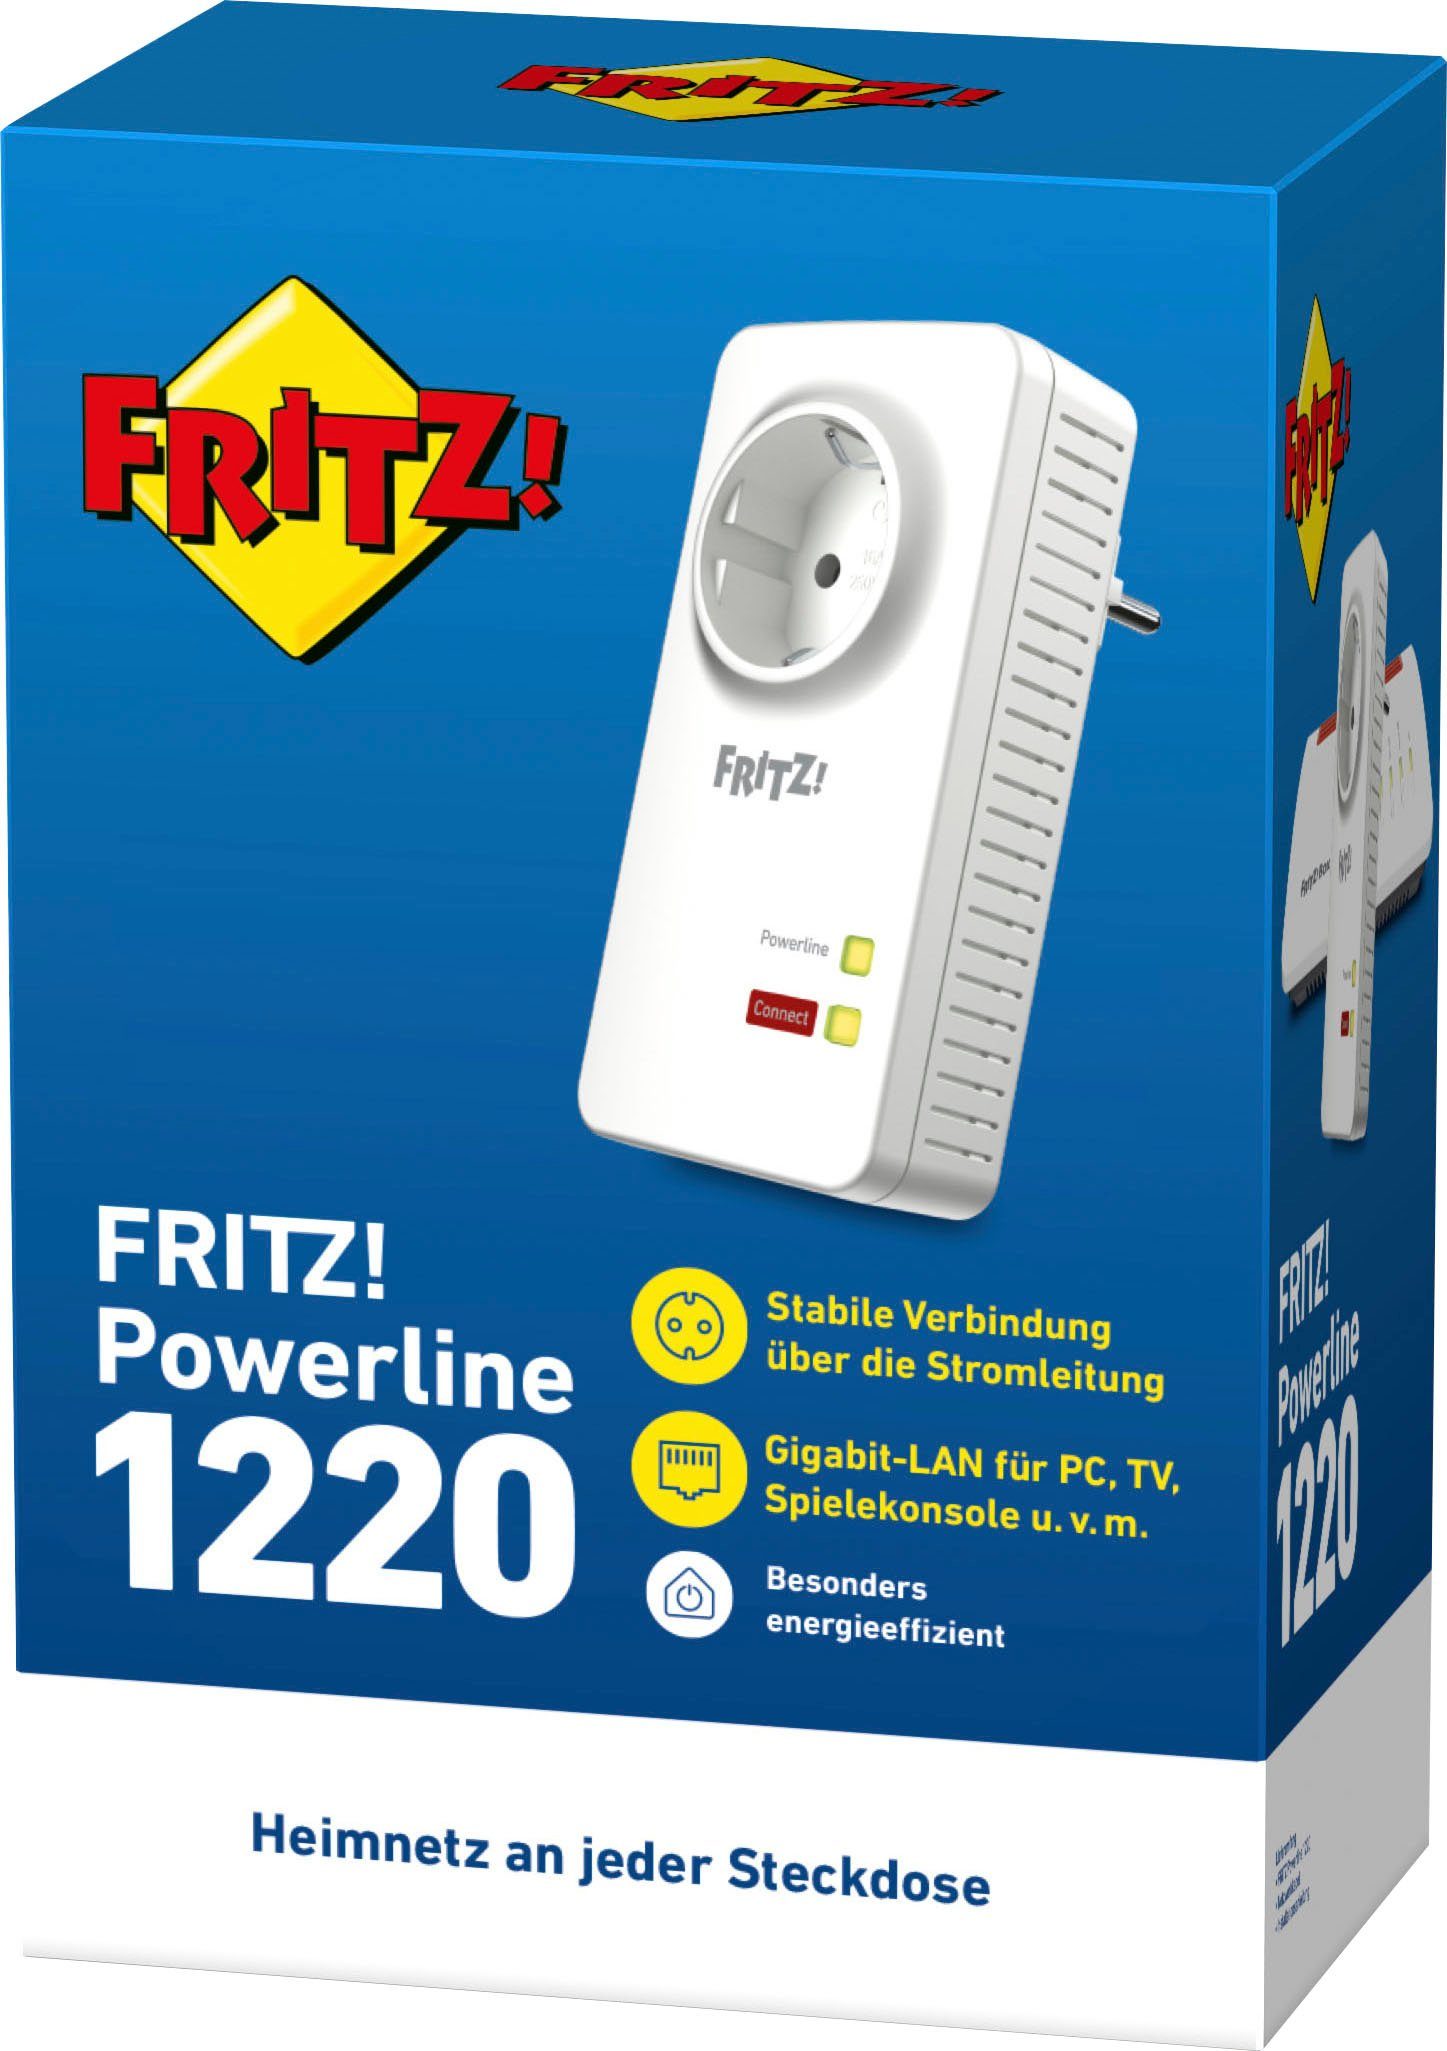 LAN-Router AVM 1220 FRITZ!Powerline